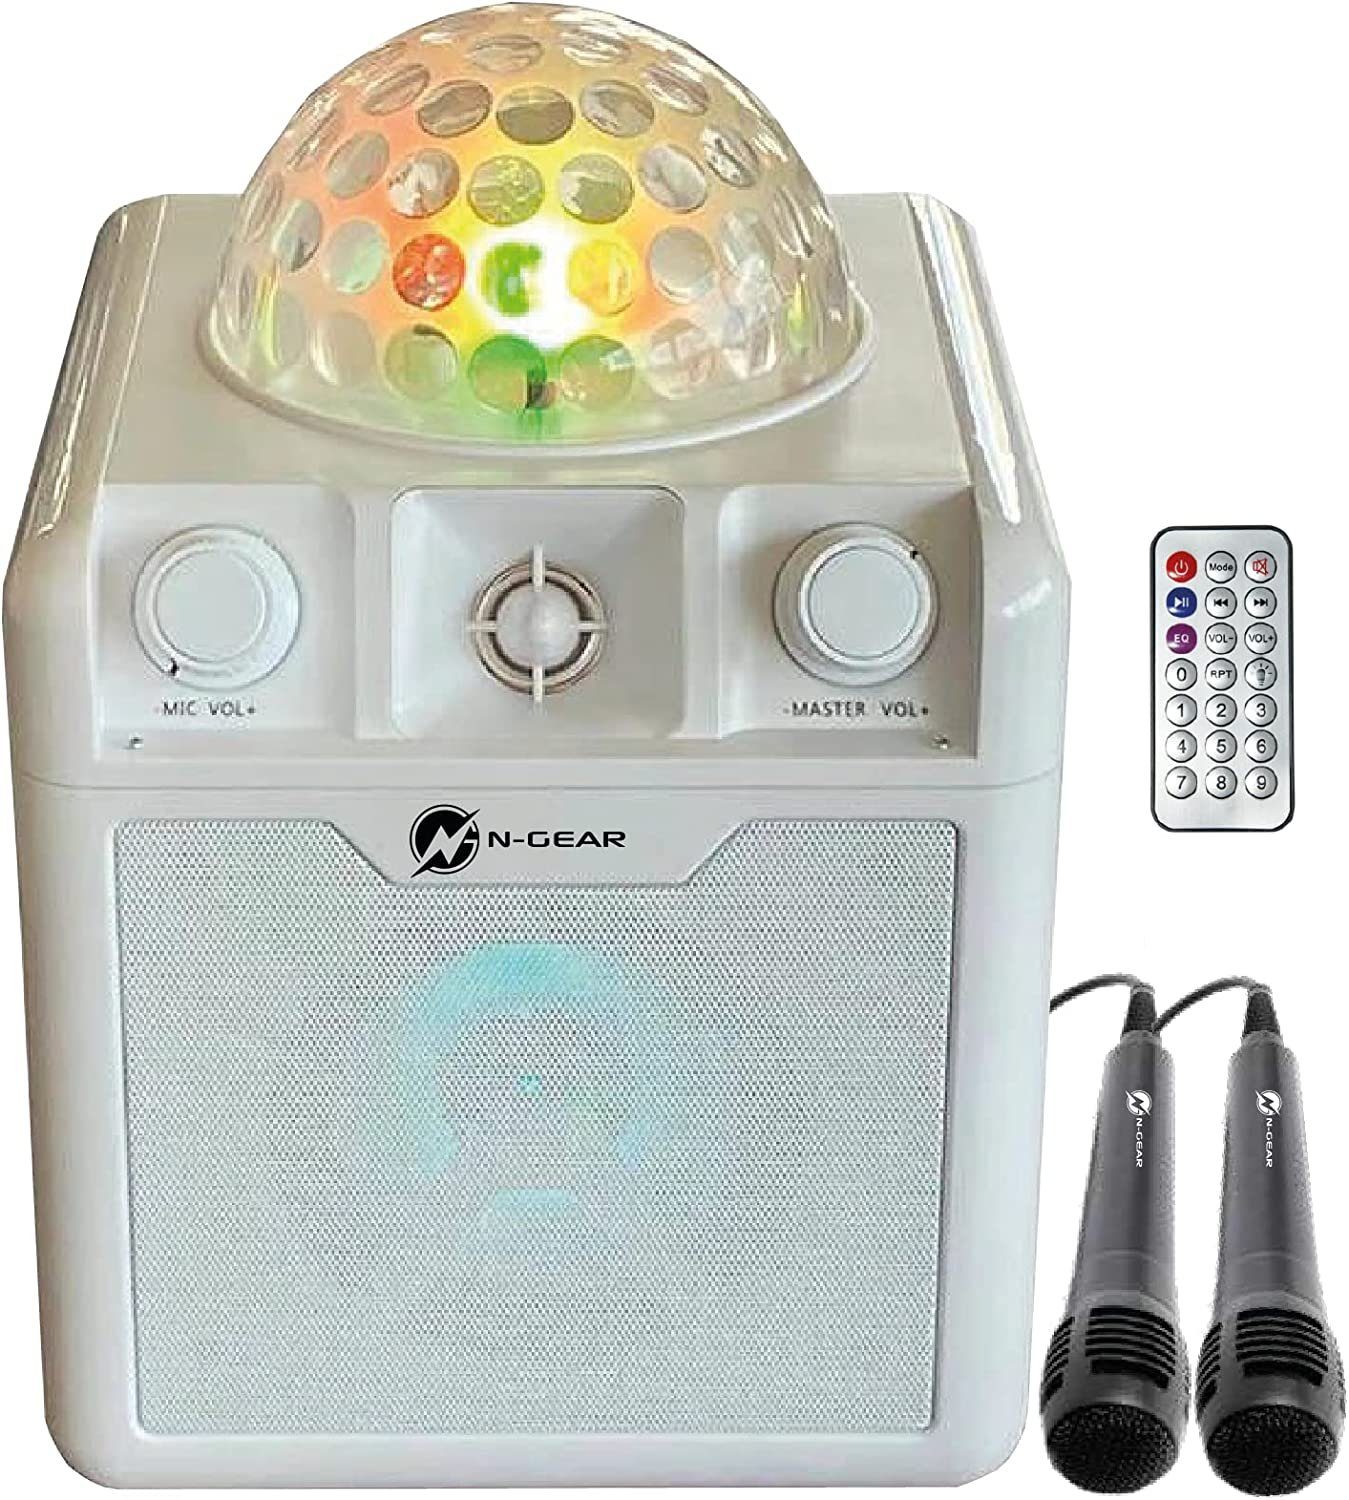 N-GEAR DISCO410 Karaoke & Party Bluetooth Lautsprecher Bluetooth- Lautsprecher (Mikrofon, Disco Licht), Tolle Leuchteffekte